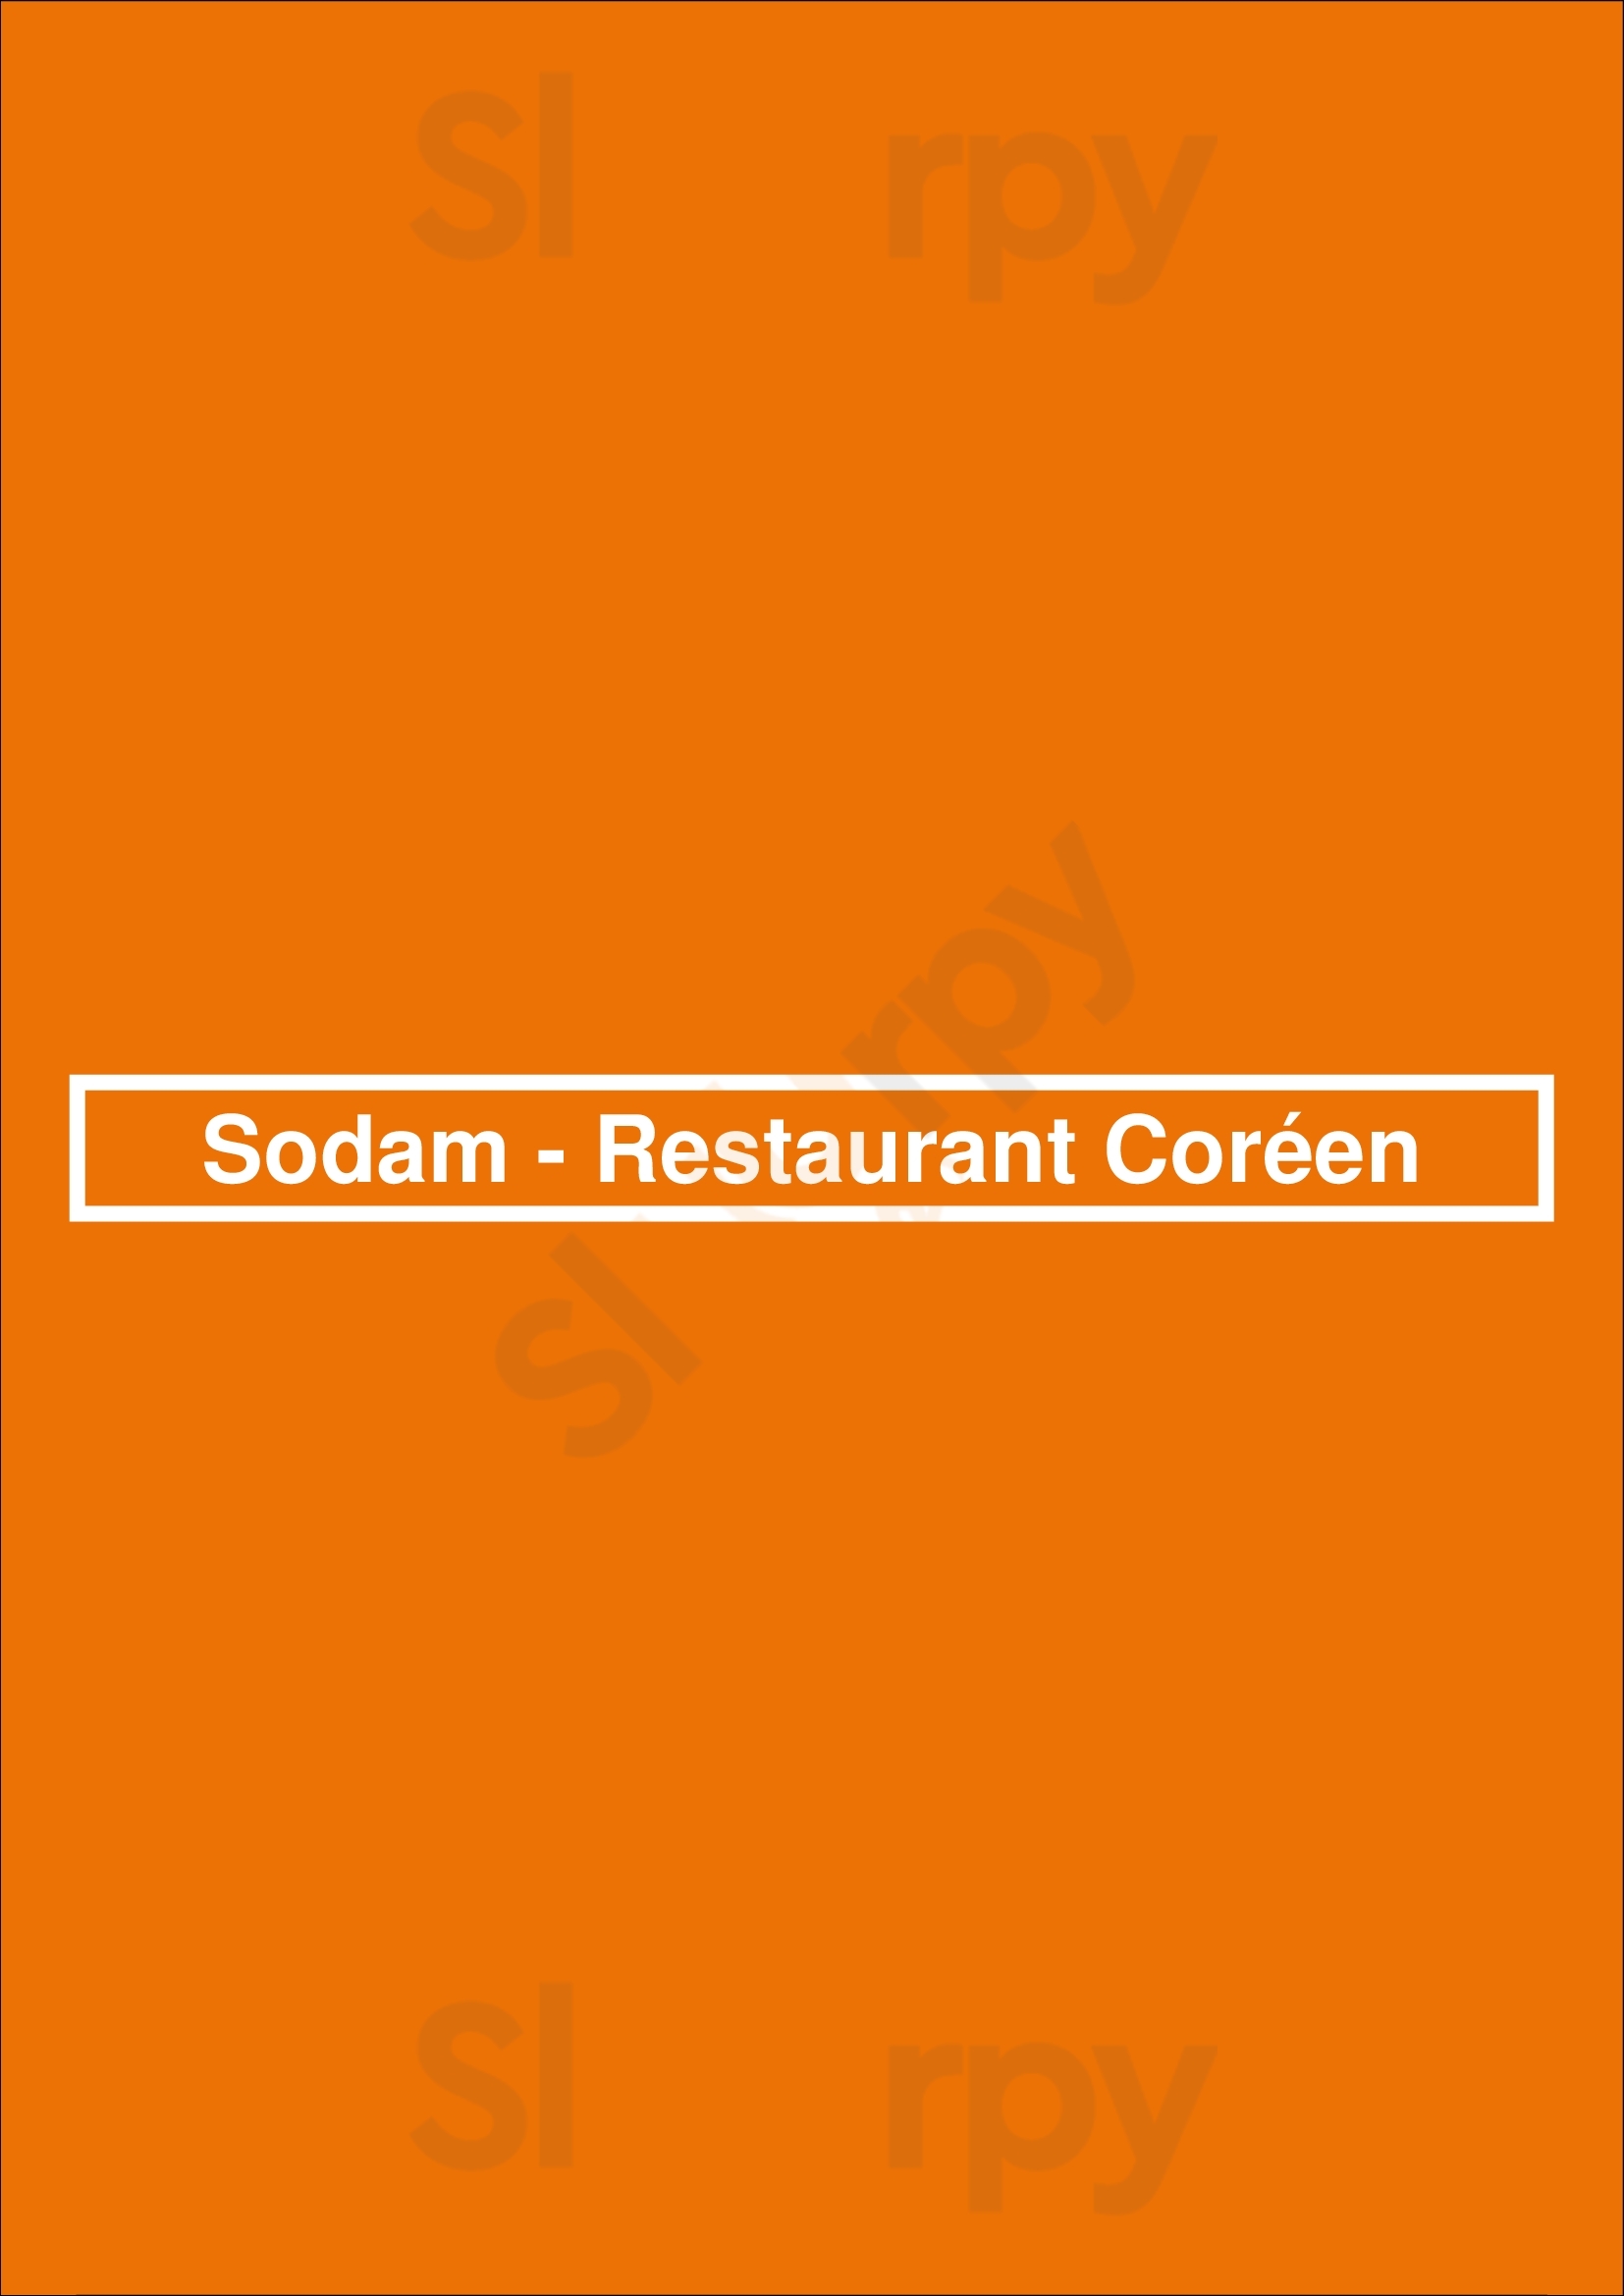 Sodam - Restaurant Coréen Paris Menu - 1